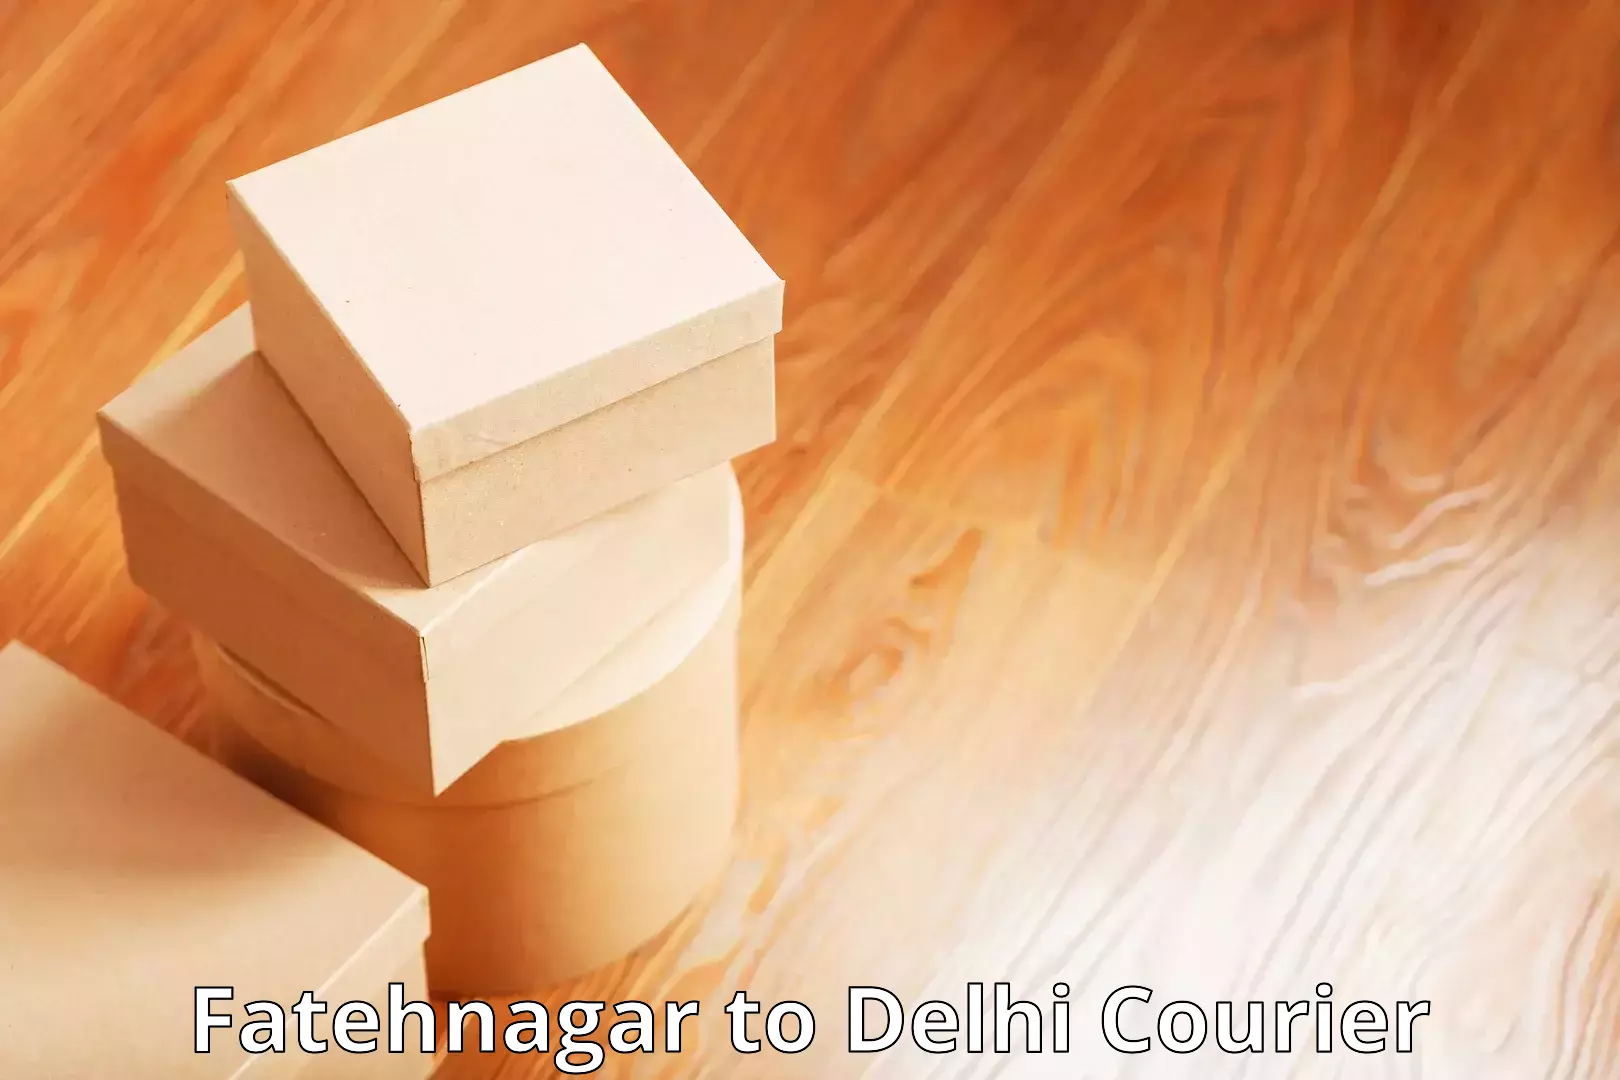 Dynamic courier services Fatehnagar to IIT Delhi